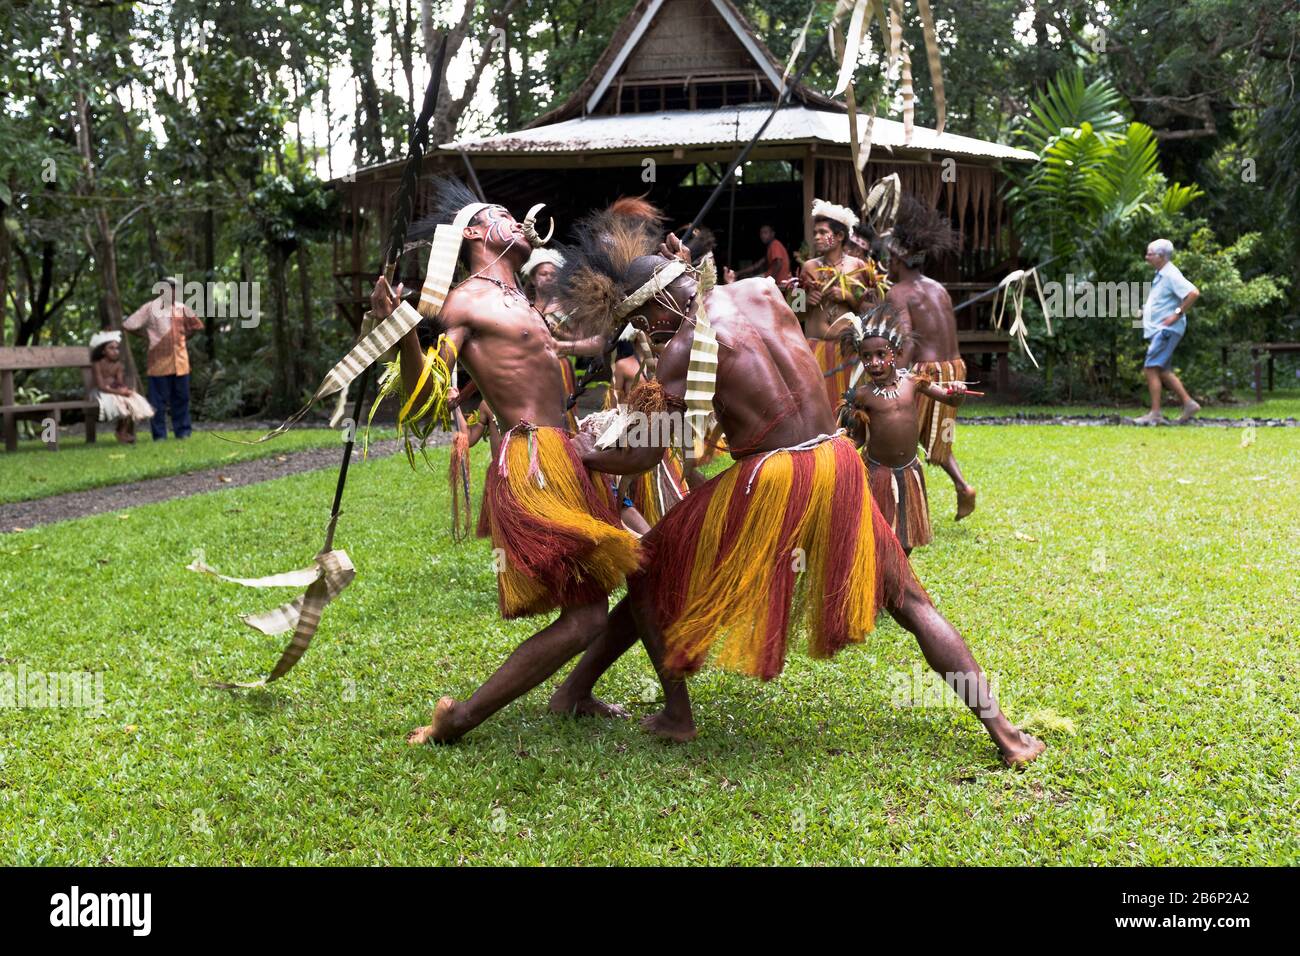 dh Guerra danza cultura danza ALOTAU PAPUA NUOVA GUINEA tradizionale PNG villaggio nativi ballerini rituali locali tribesmen vestito tribale benvenuto Foto Stock